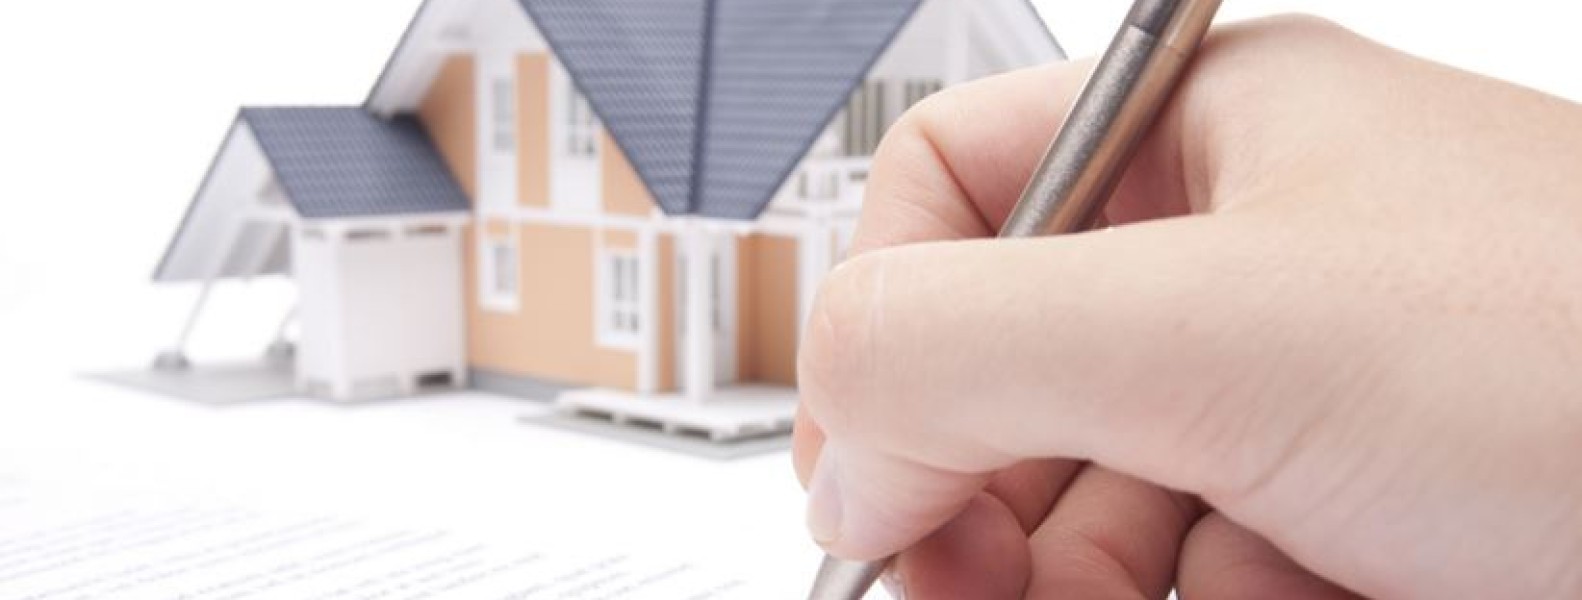 Những lưu ý căn bản về luật trong mua bán bất động sản năm 2021